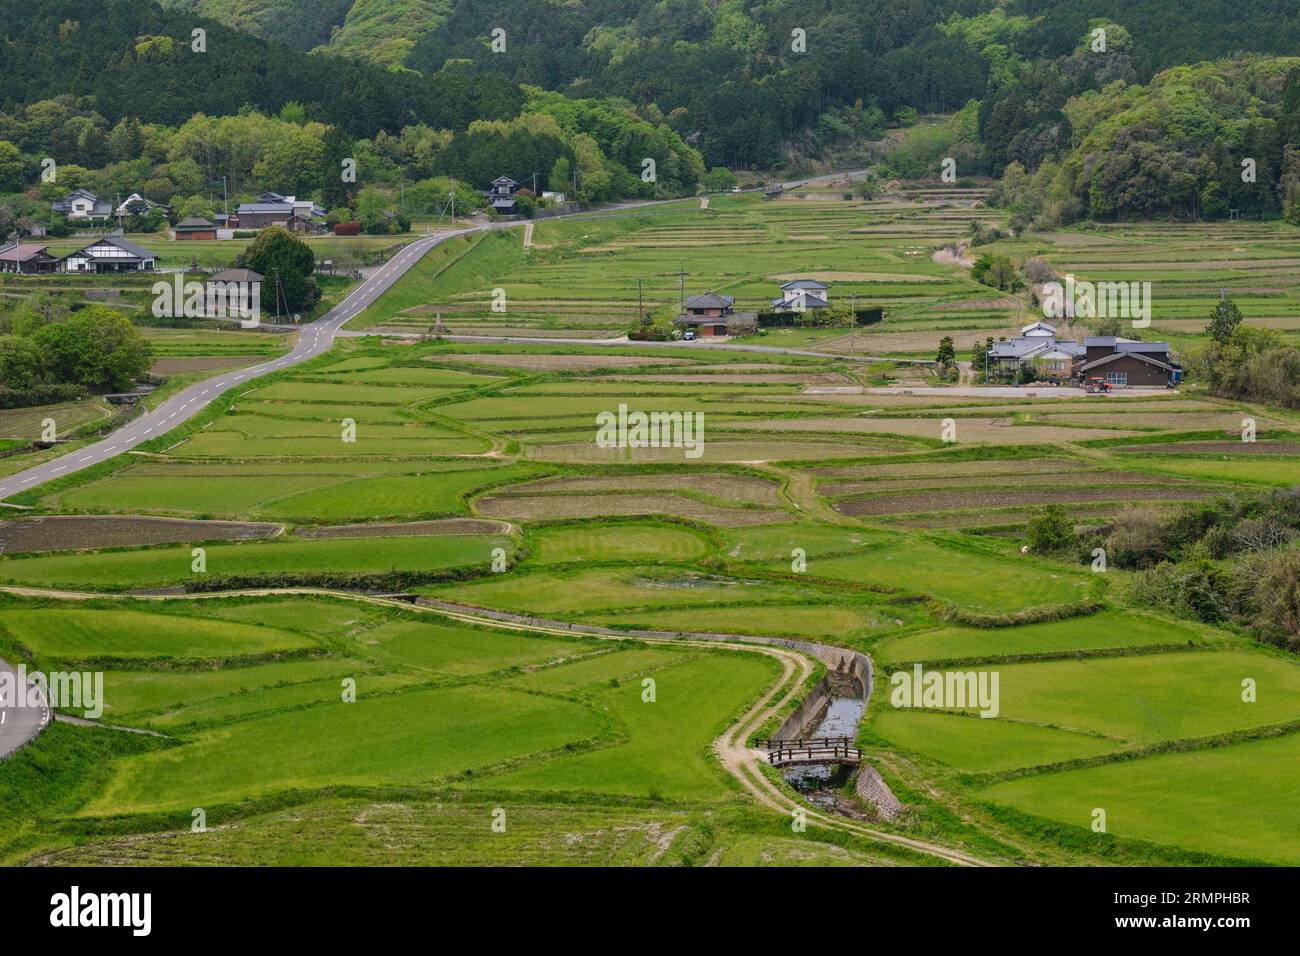 Giappone, Kyushu. Vista della campagna dal villaggio di Tashibu-no-sho, dalla penisola di Kunisaki e dalla prefettura di Oita. Risaie non ancora piantate. Foto Stock